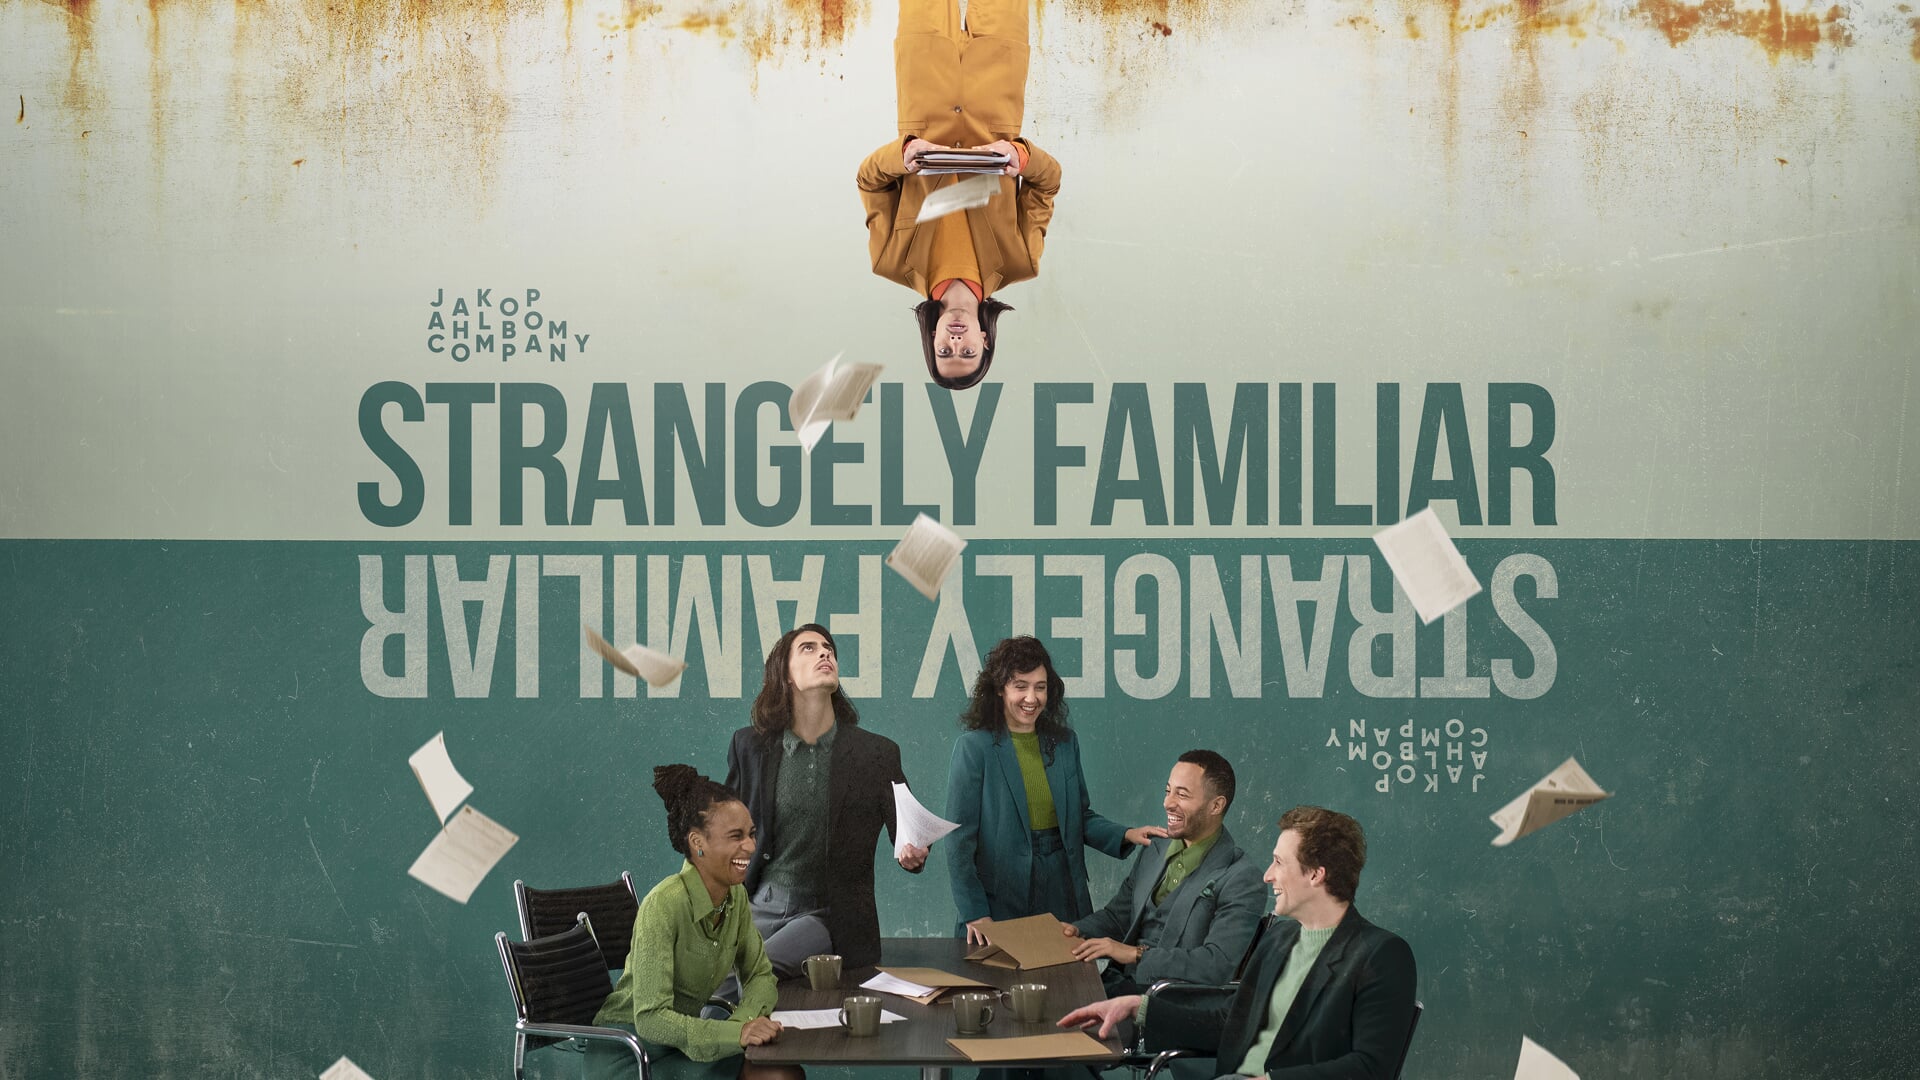 Strangley Familiar is de nieuwe surreële en humorvolle voorstelling van het gezelschap Jakop Ahlbom Company.  